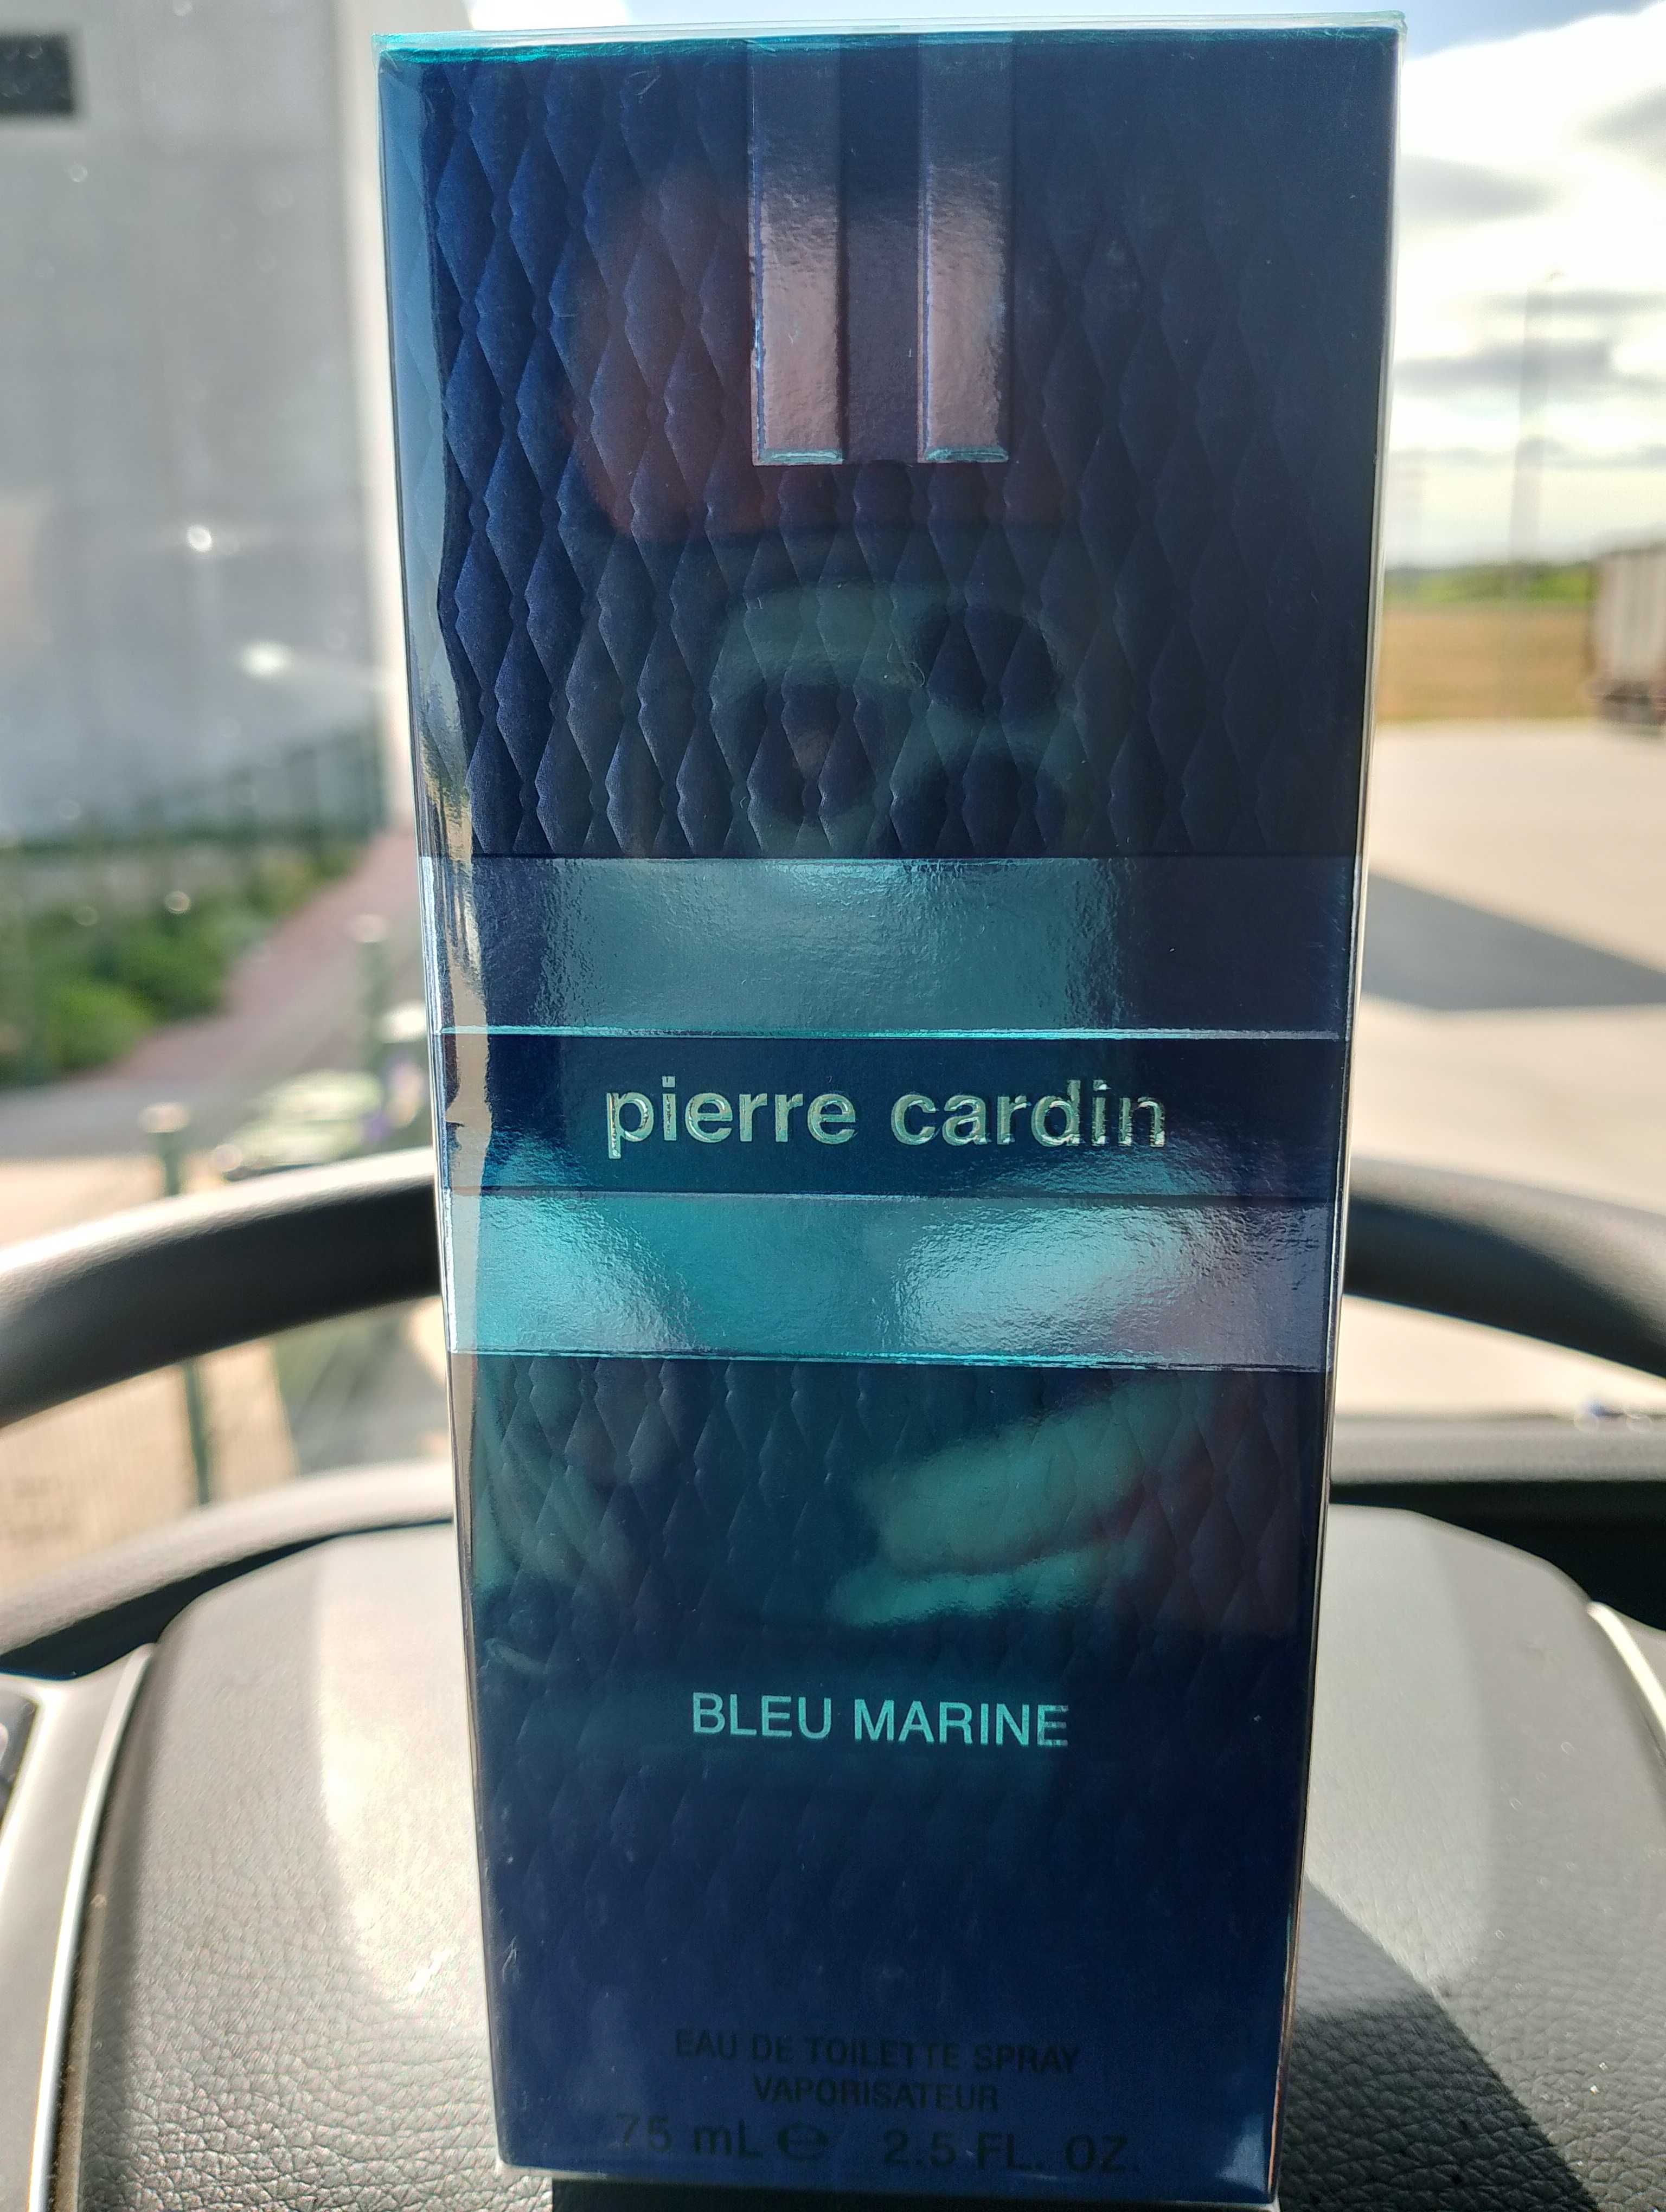 Pierre Cardin Bleu Marine woda toaletowa z Francji